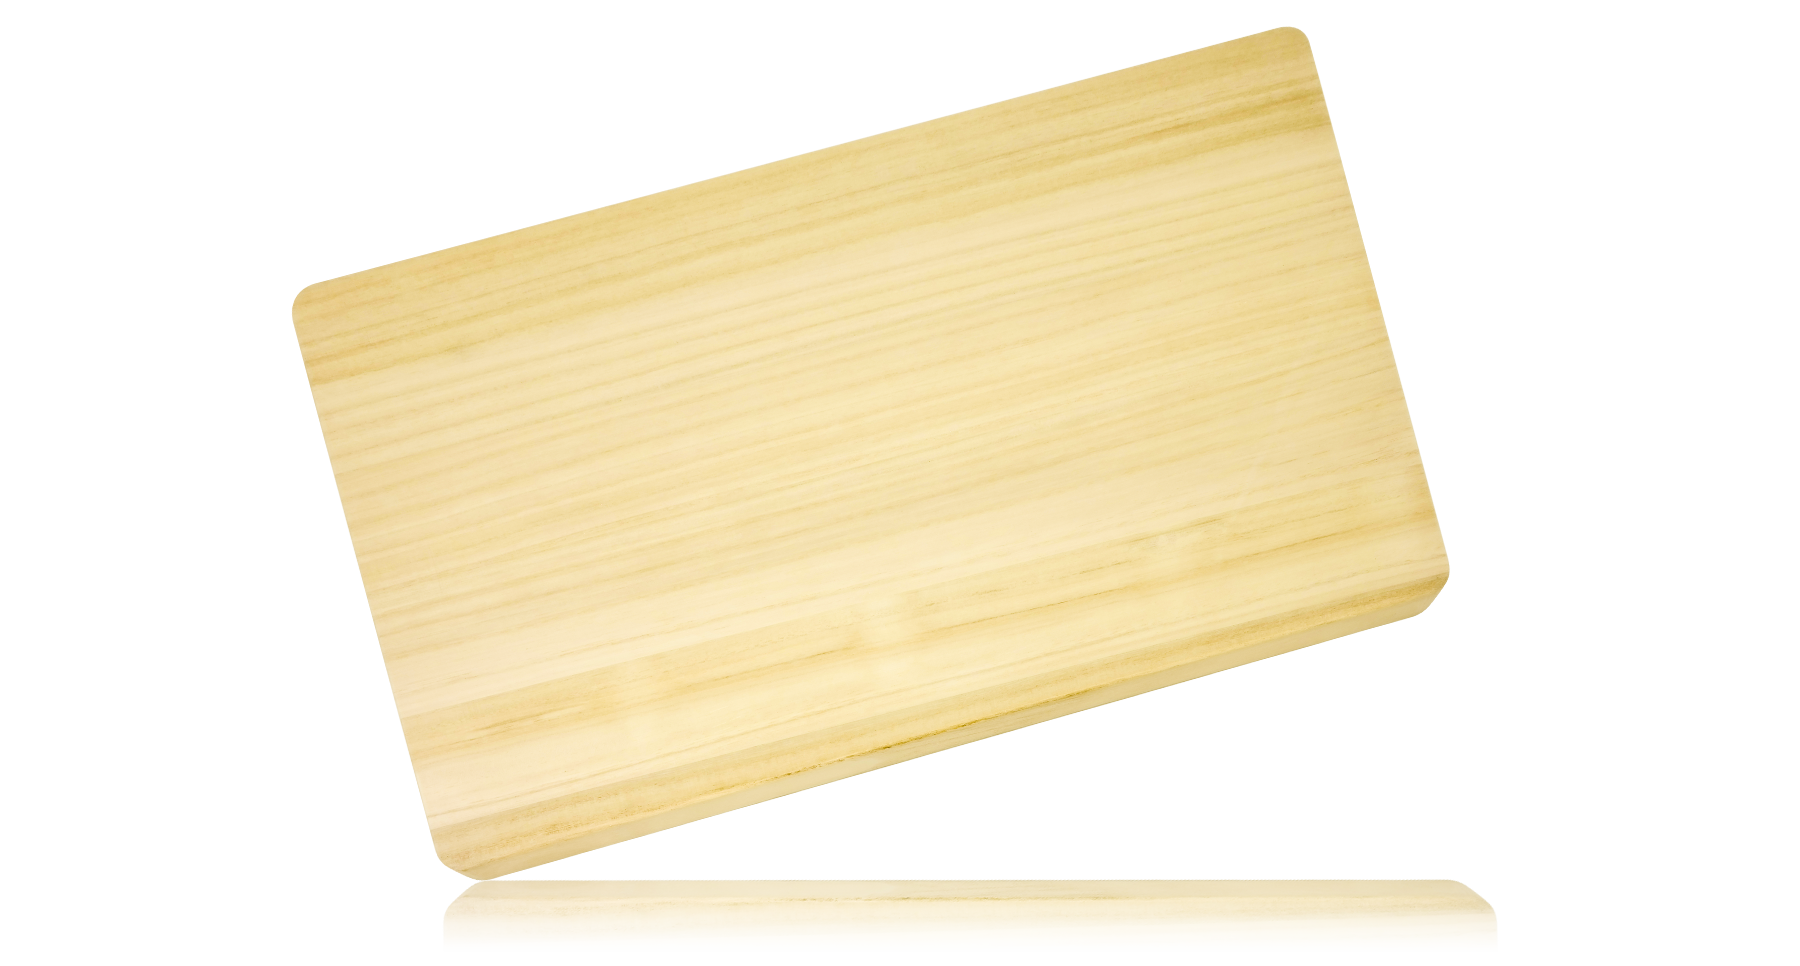 Разделочная доска деревянная Hatamoto из дерева, материал дерево Адамово, размер L, H-346